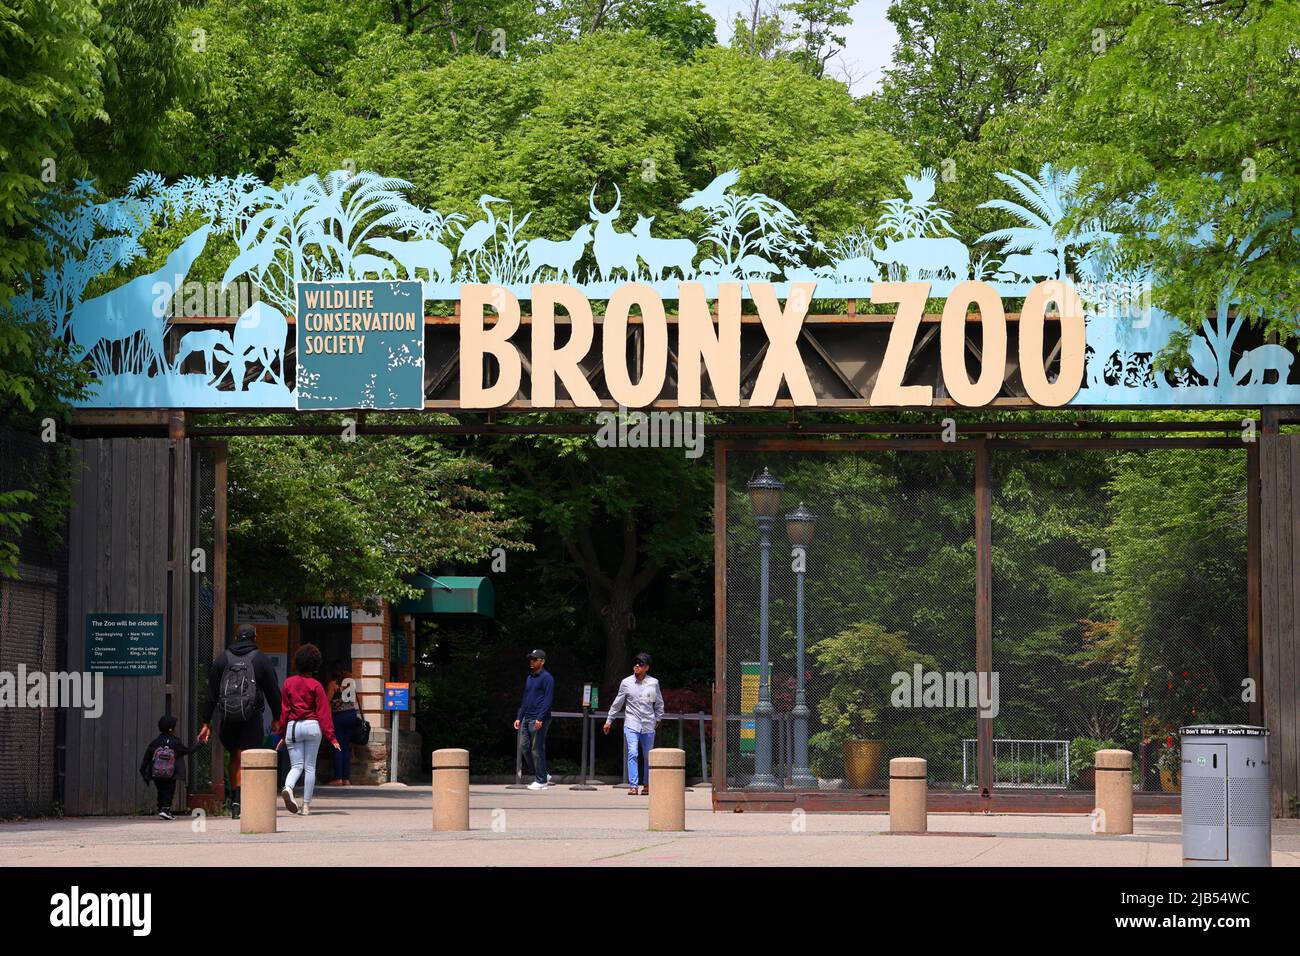 Personnes entrant dans le Bronx Zoo par la porte de l'Asie. Le Bronx Zoo est un grand zoo urbain de New York géré par la Wildlife conservation Society Banque D'Images